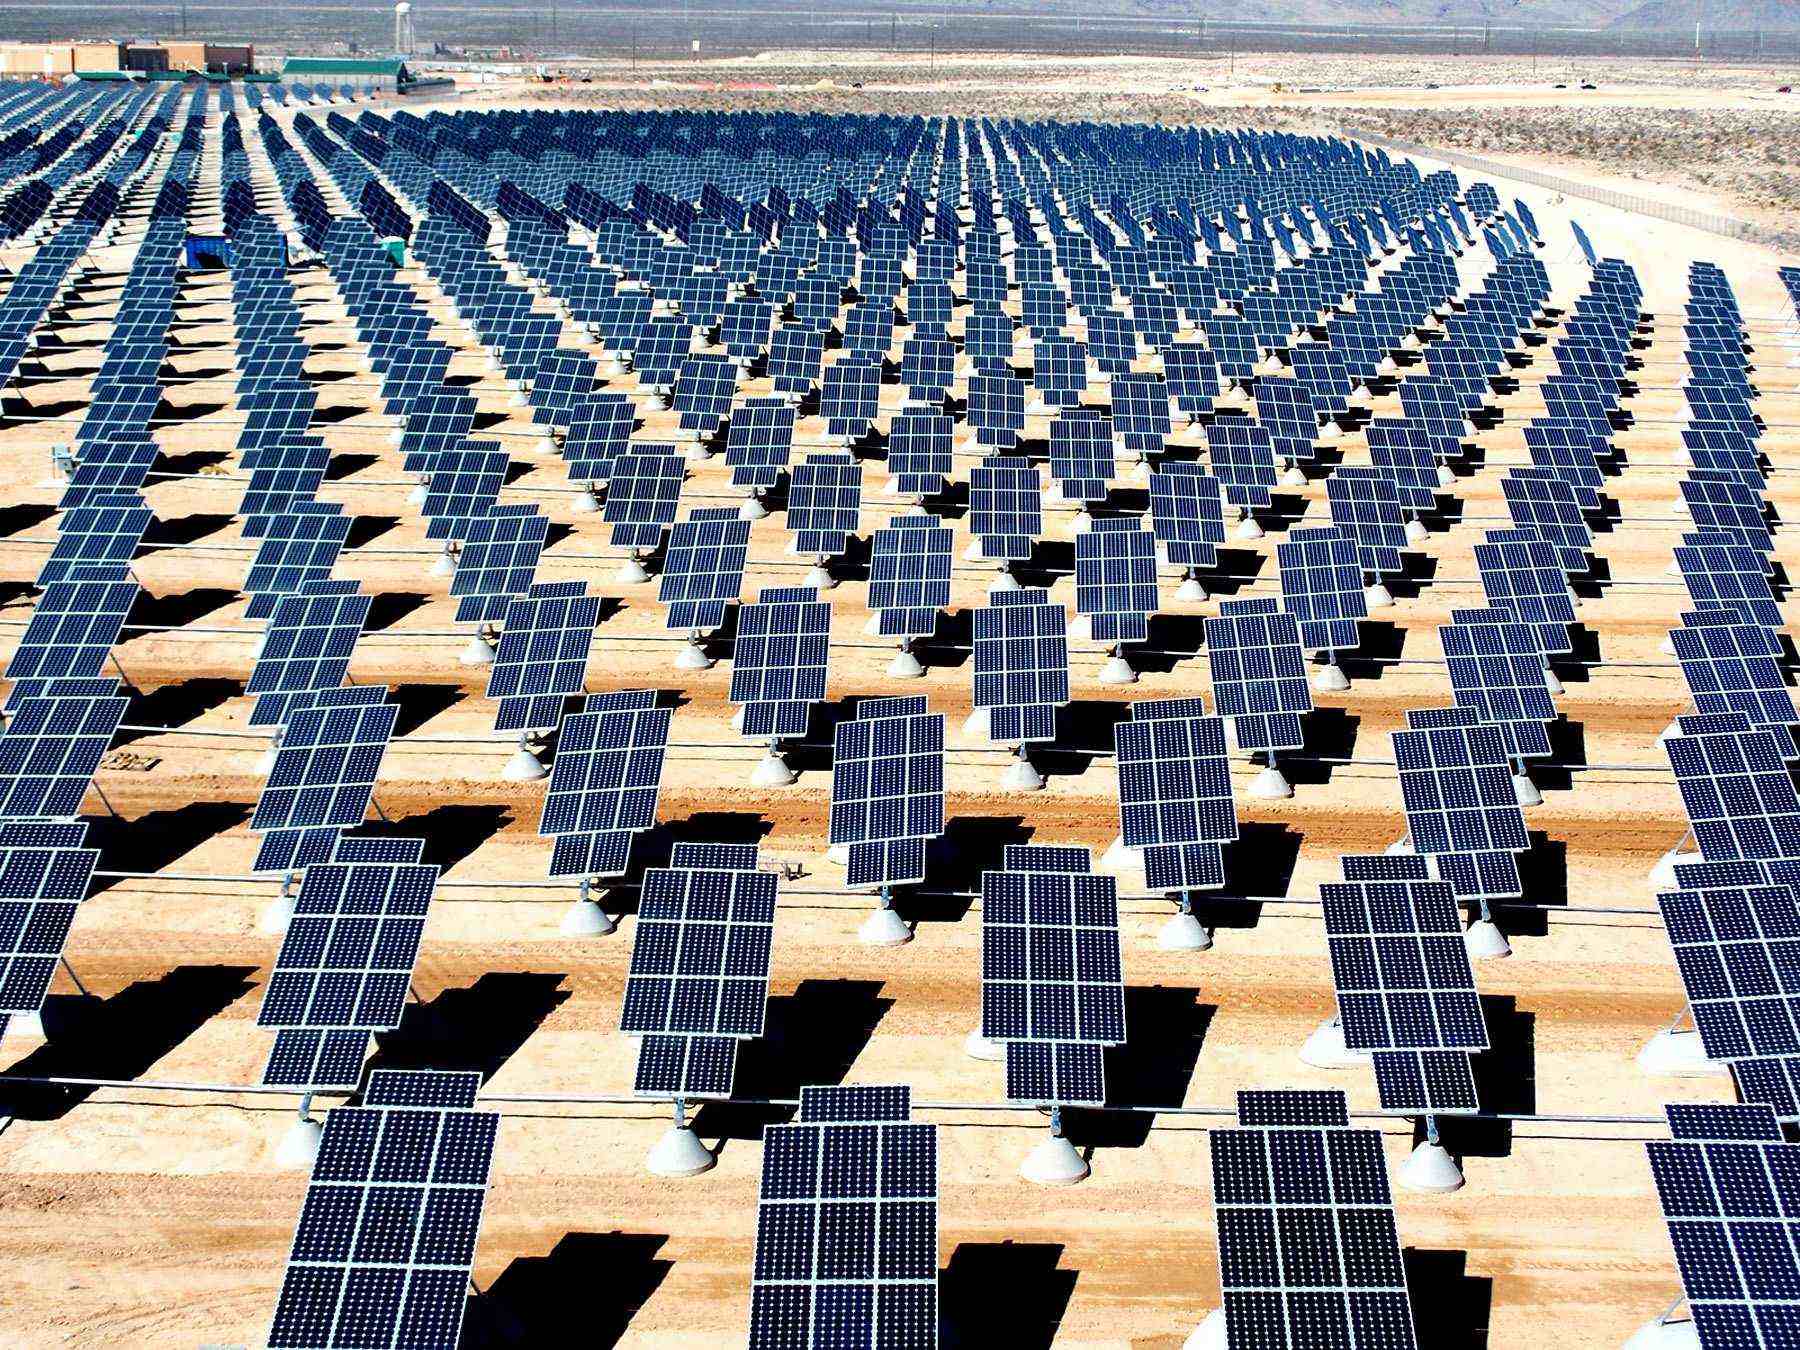 Solar photovoltaic array